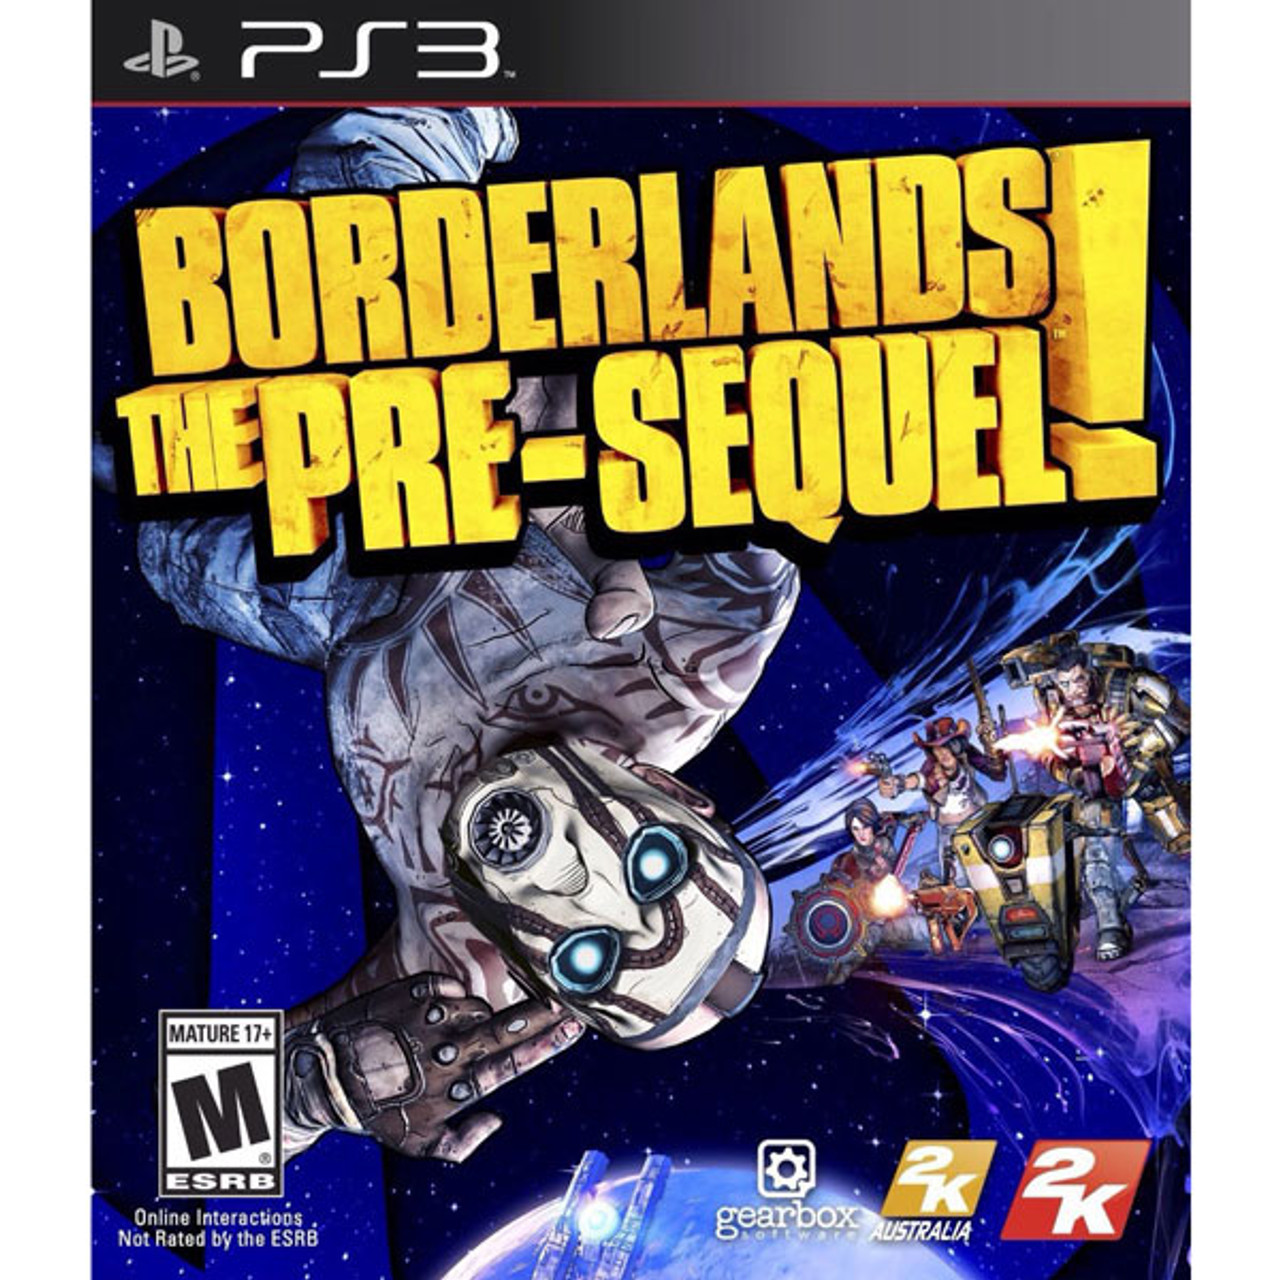 Borderlands 2 - PlayStation 3 (PS3) Game